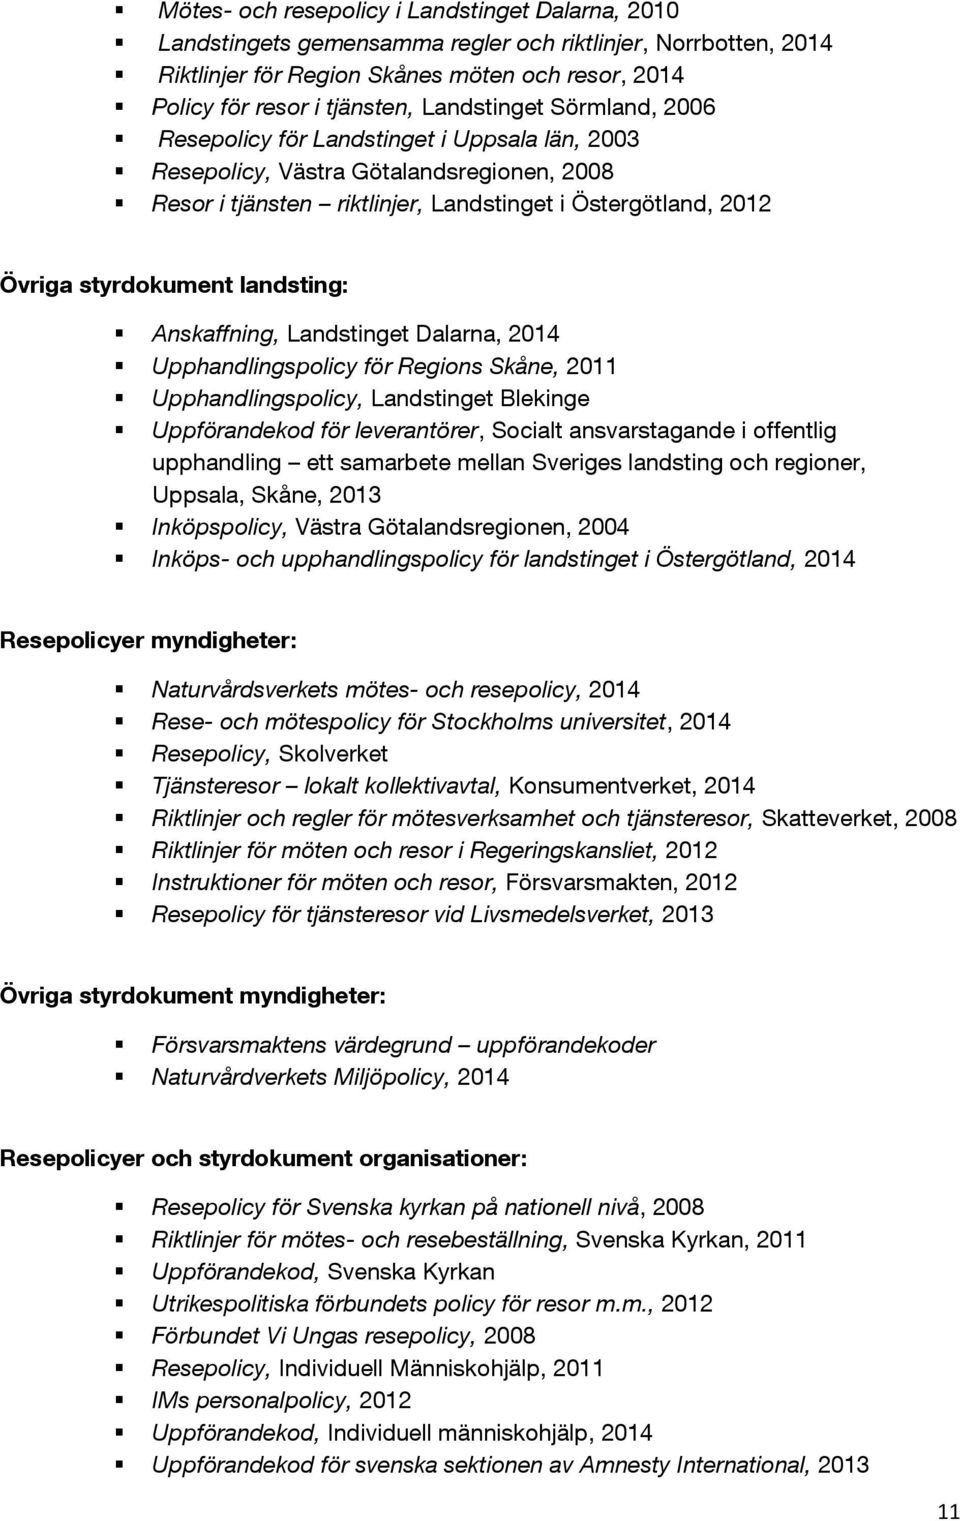 landsting: Anskaffning, Landstinget Dalarna, 2014 Upphandlingspolicy för Regions Skåne, 2011 Upphandlingspolicy, Landstinget Blekinge Uppförandekod för leverantörer, Socialt ansvarstagande i